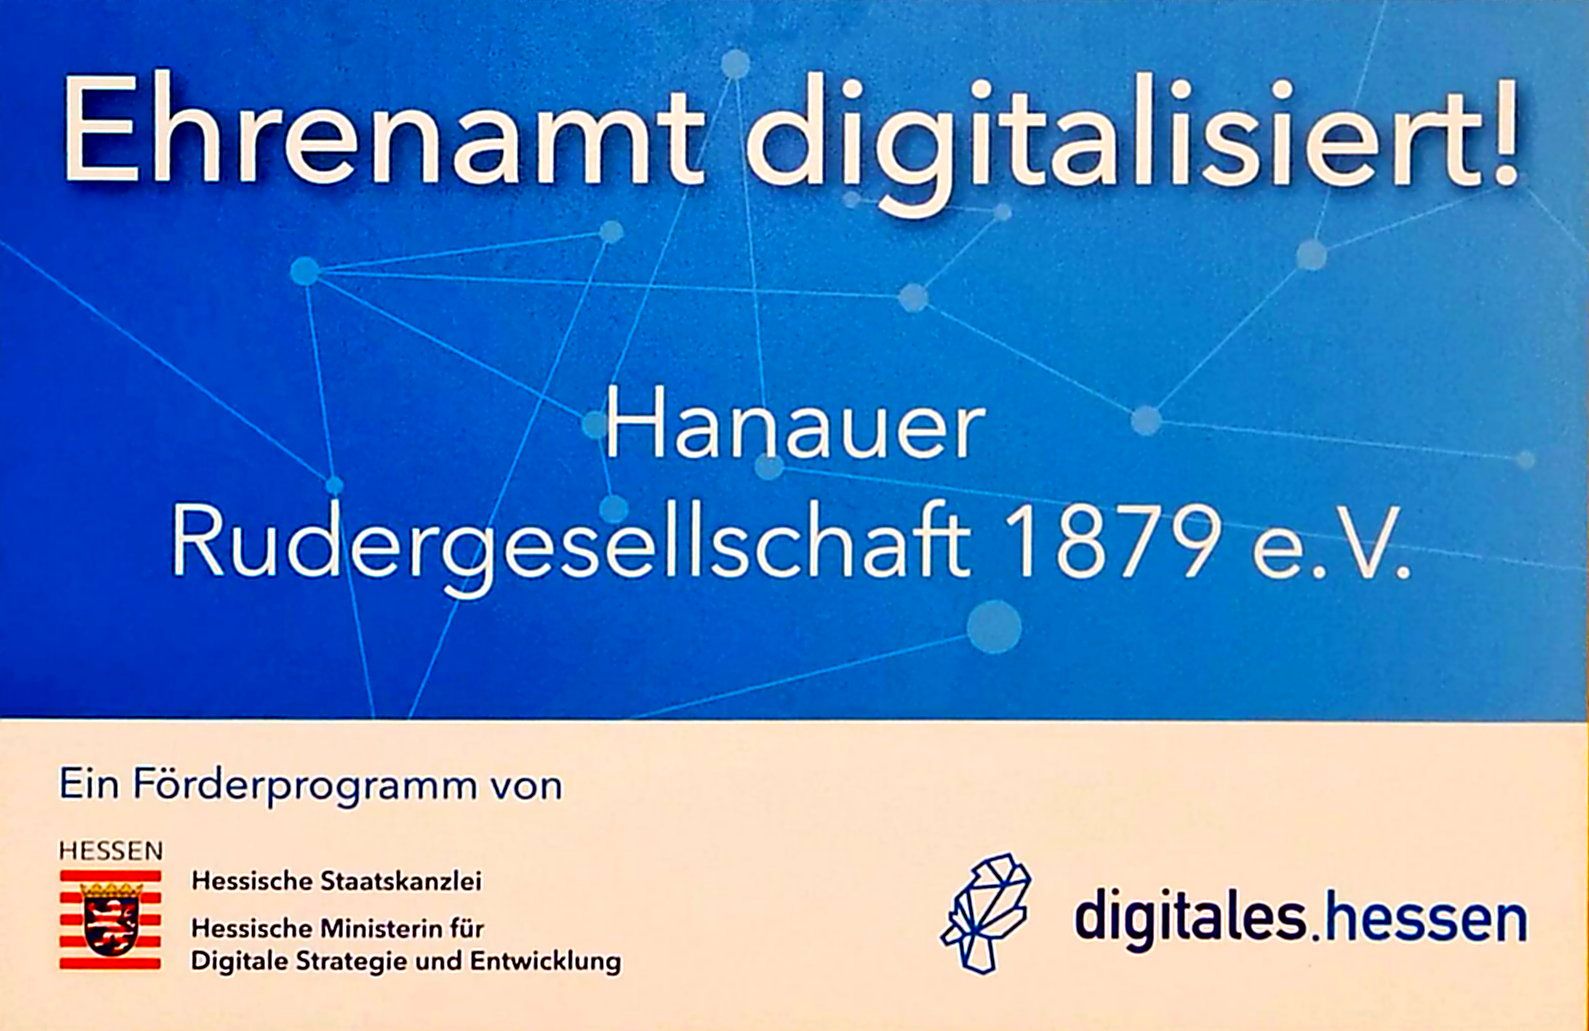 Ehrenamt digitalisiert - Veranstaltung zur Vergabe von Fördermittel in Wiesbaden